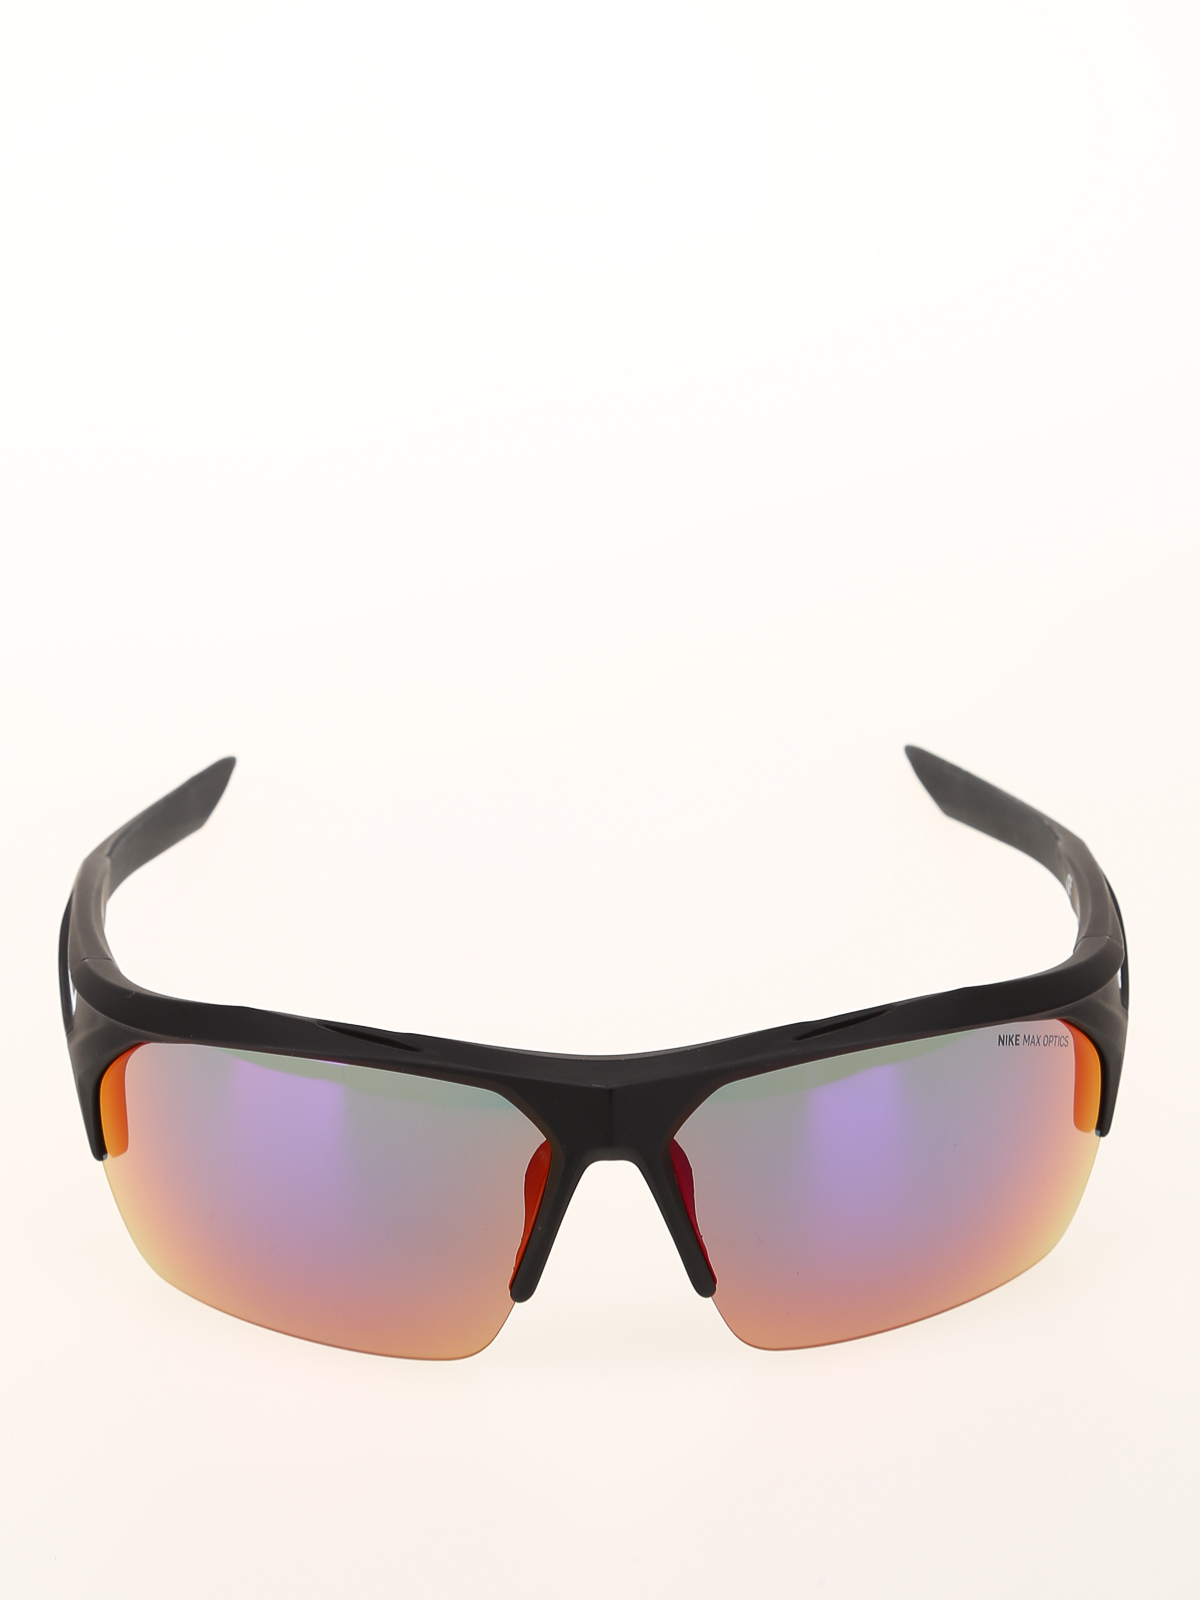 Persona a cargo del juego deportivo lanzar Tumba Sunglasses Nike - Terminus black mask style sunglasses - EV1031016